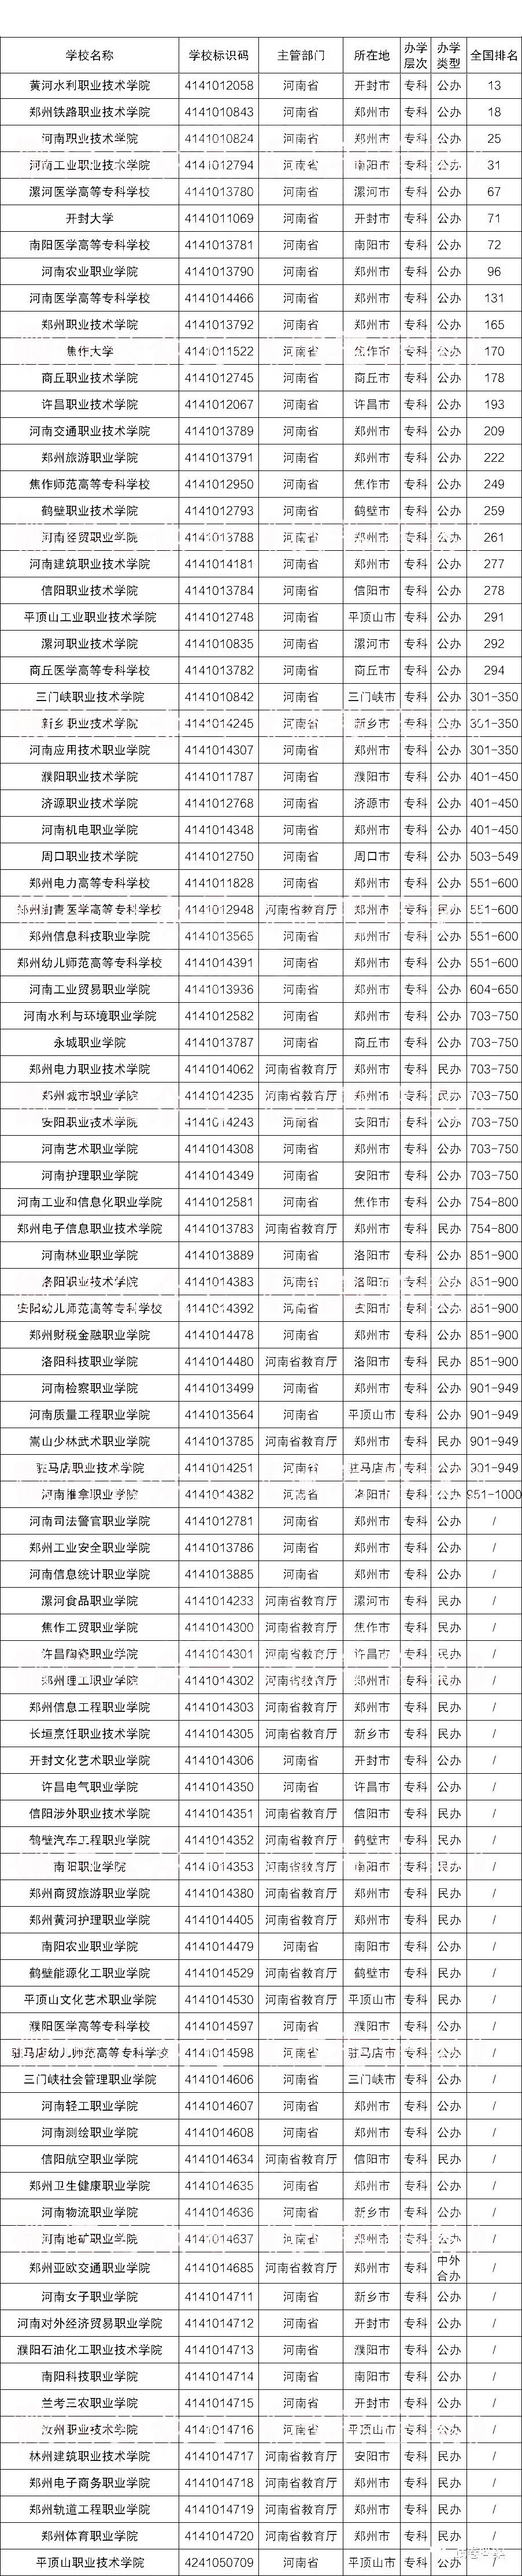 河南省市级排名2020_2020河南省高校排名:58所高校分8个档次!河南科技大学